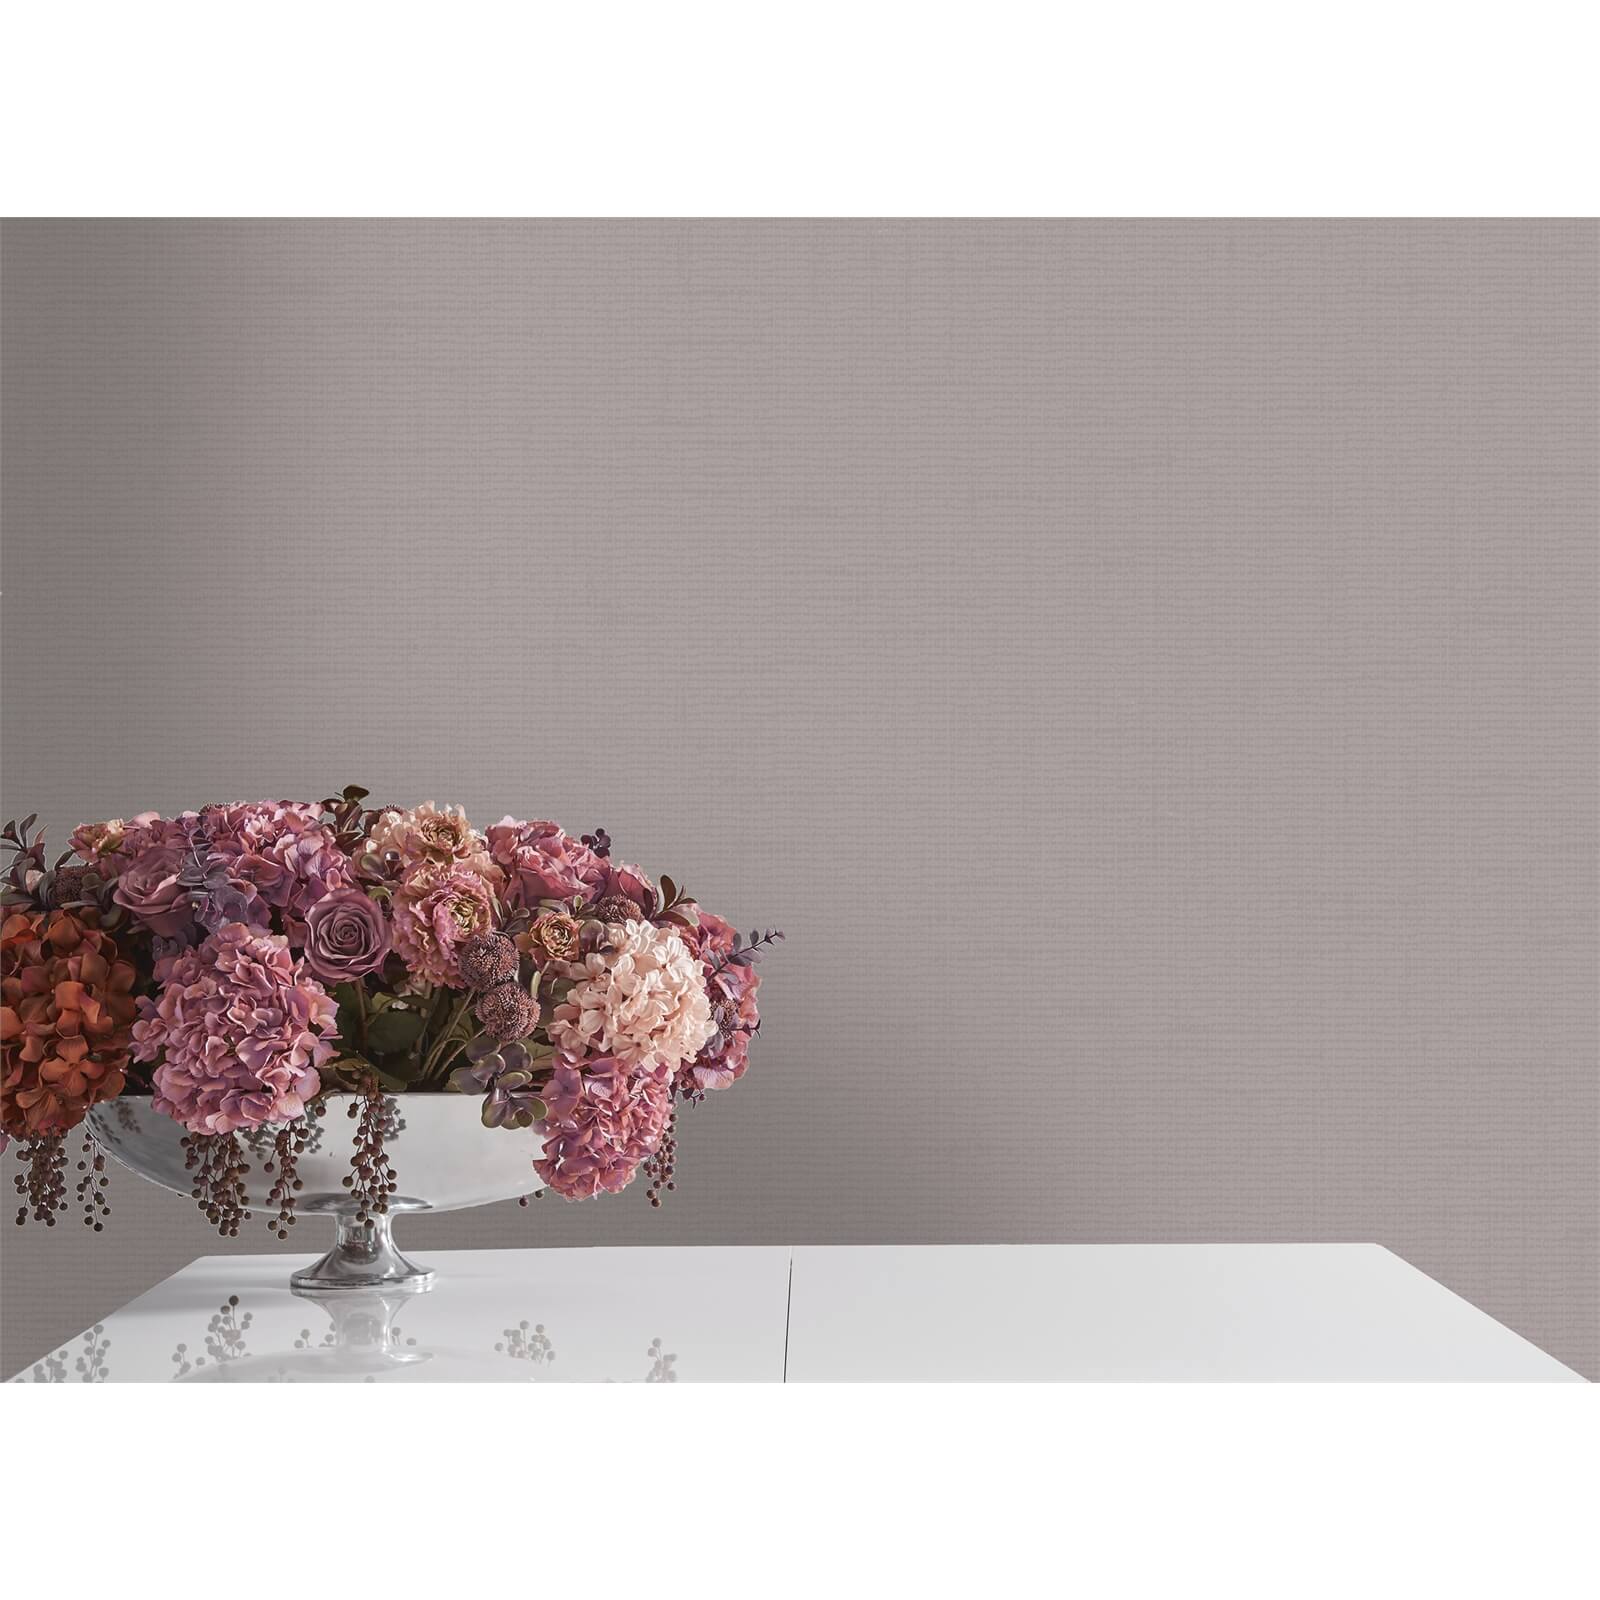 Holden Decor Marcia Plain Embossed Metallic Glitter Heather Wallpaper